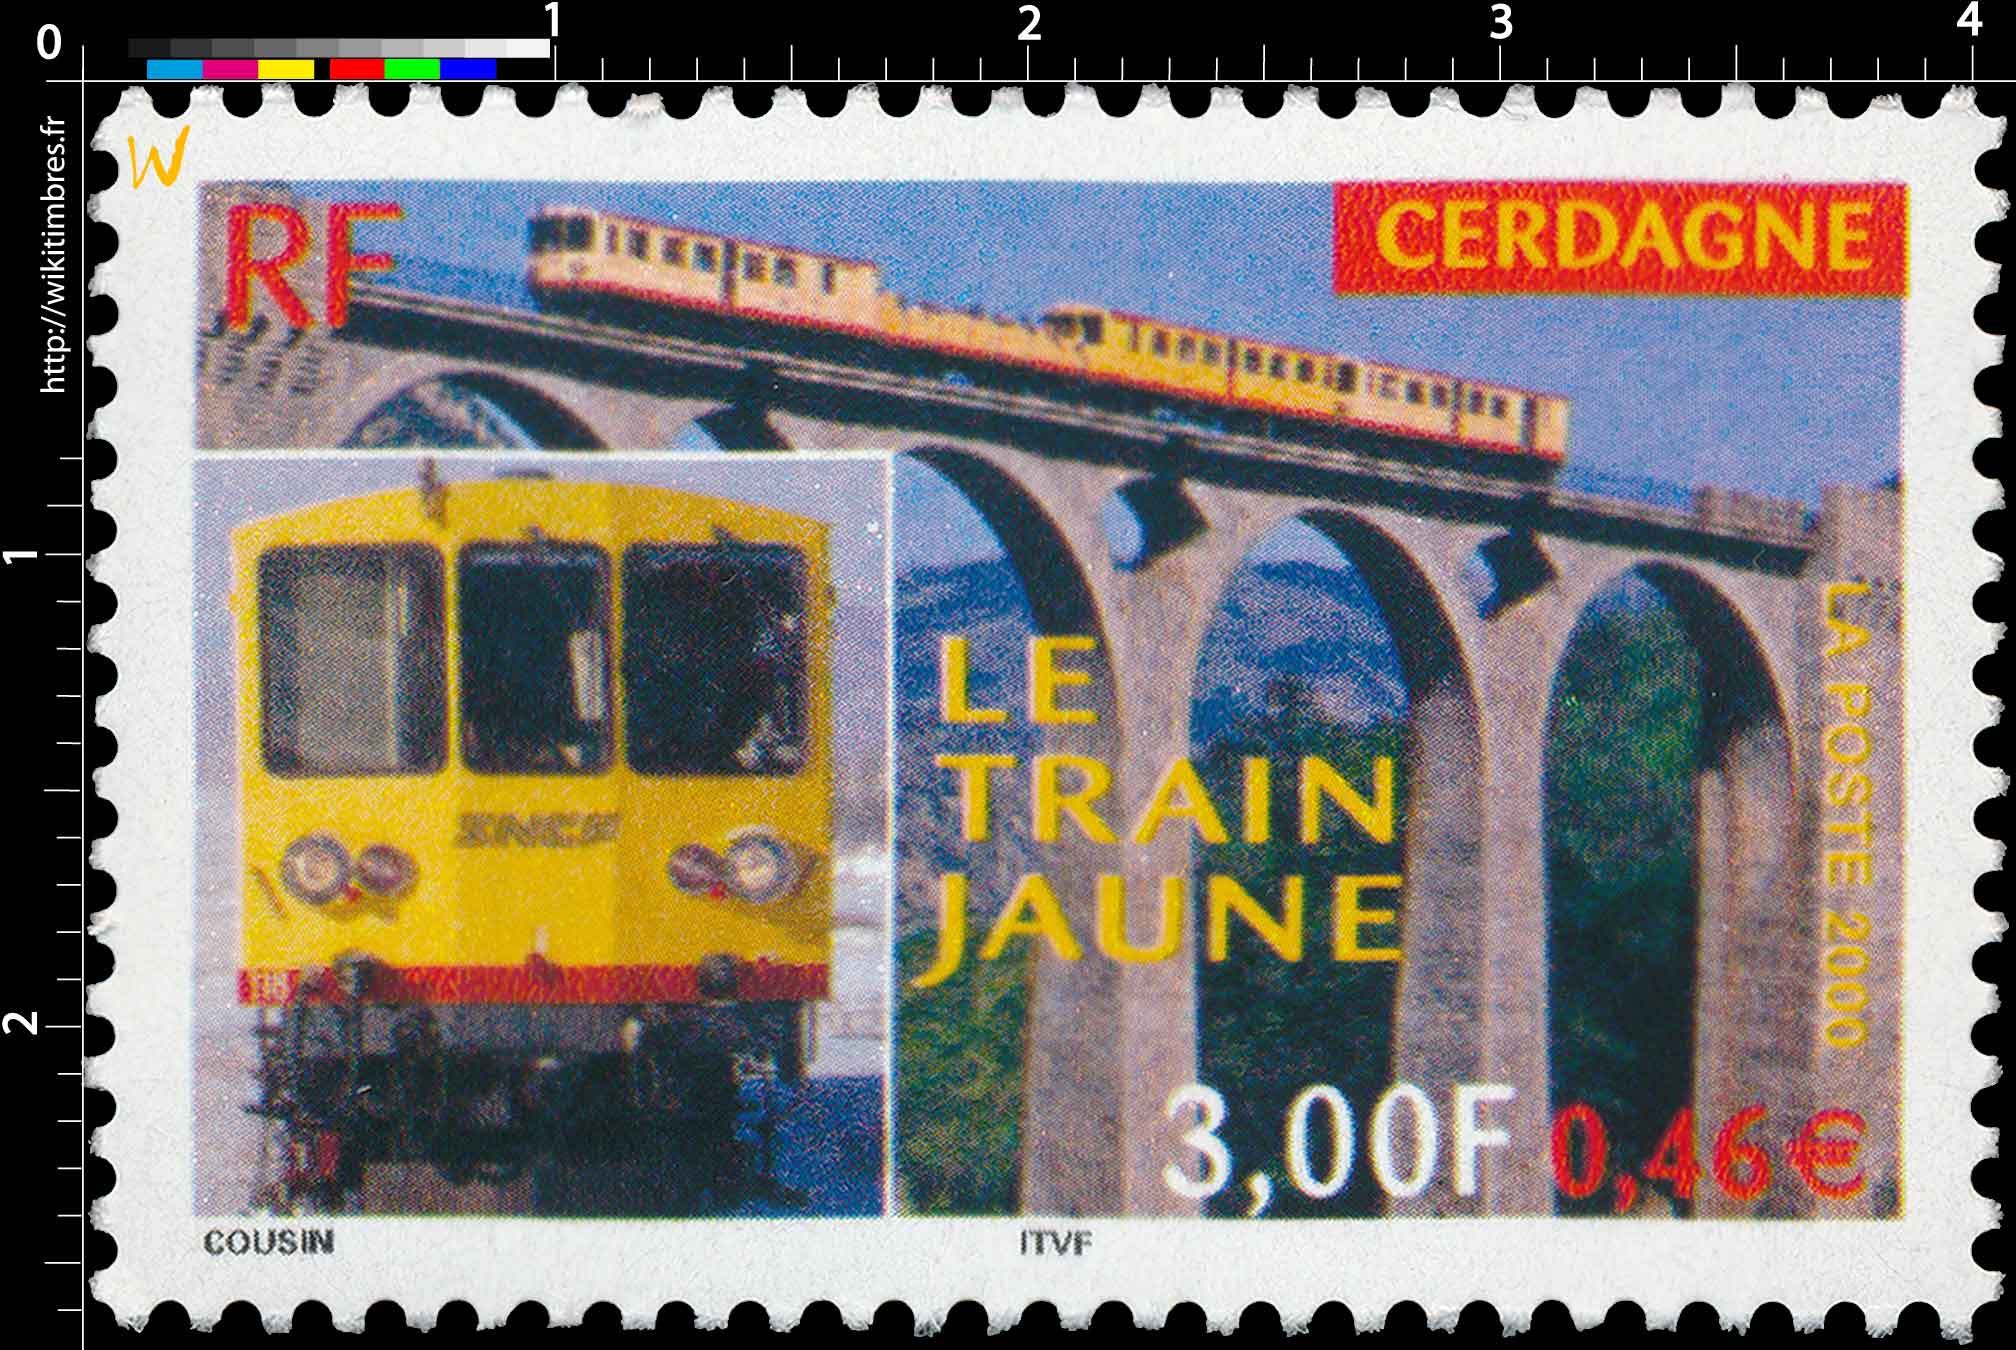 2000 LE TRAIN JAUNE CERDAGNE